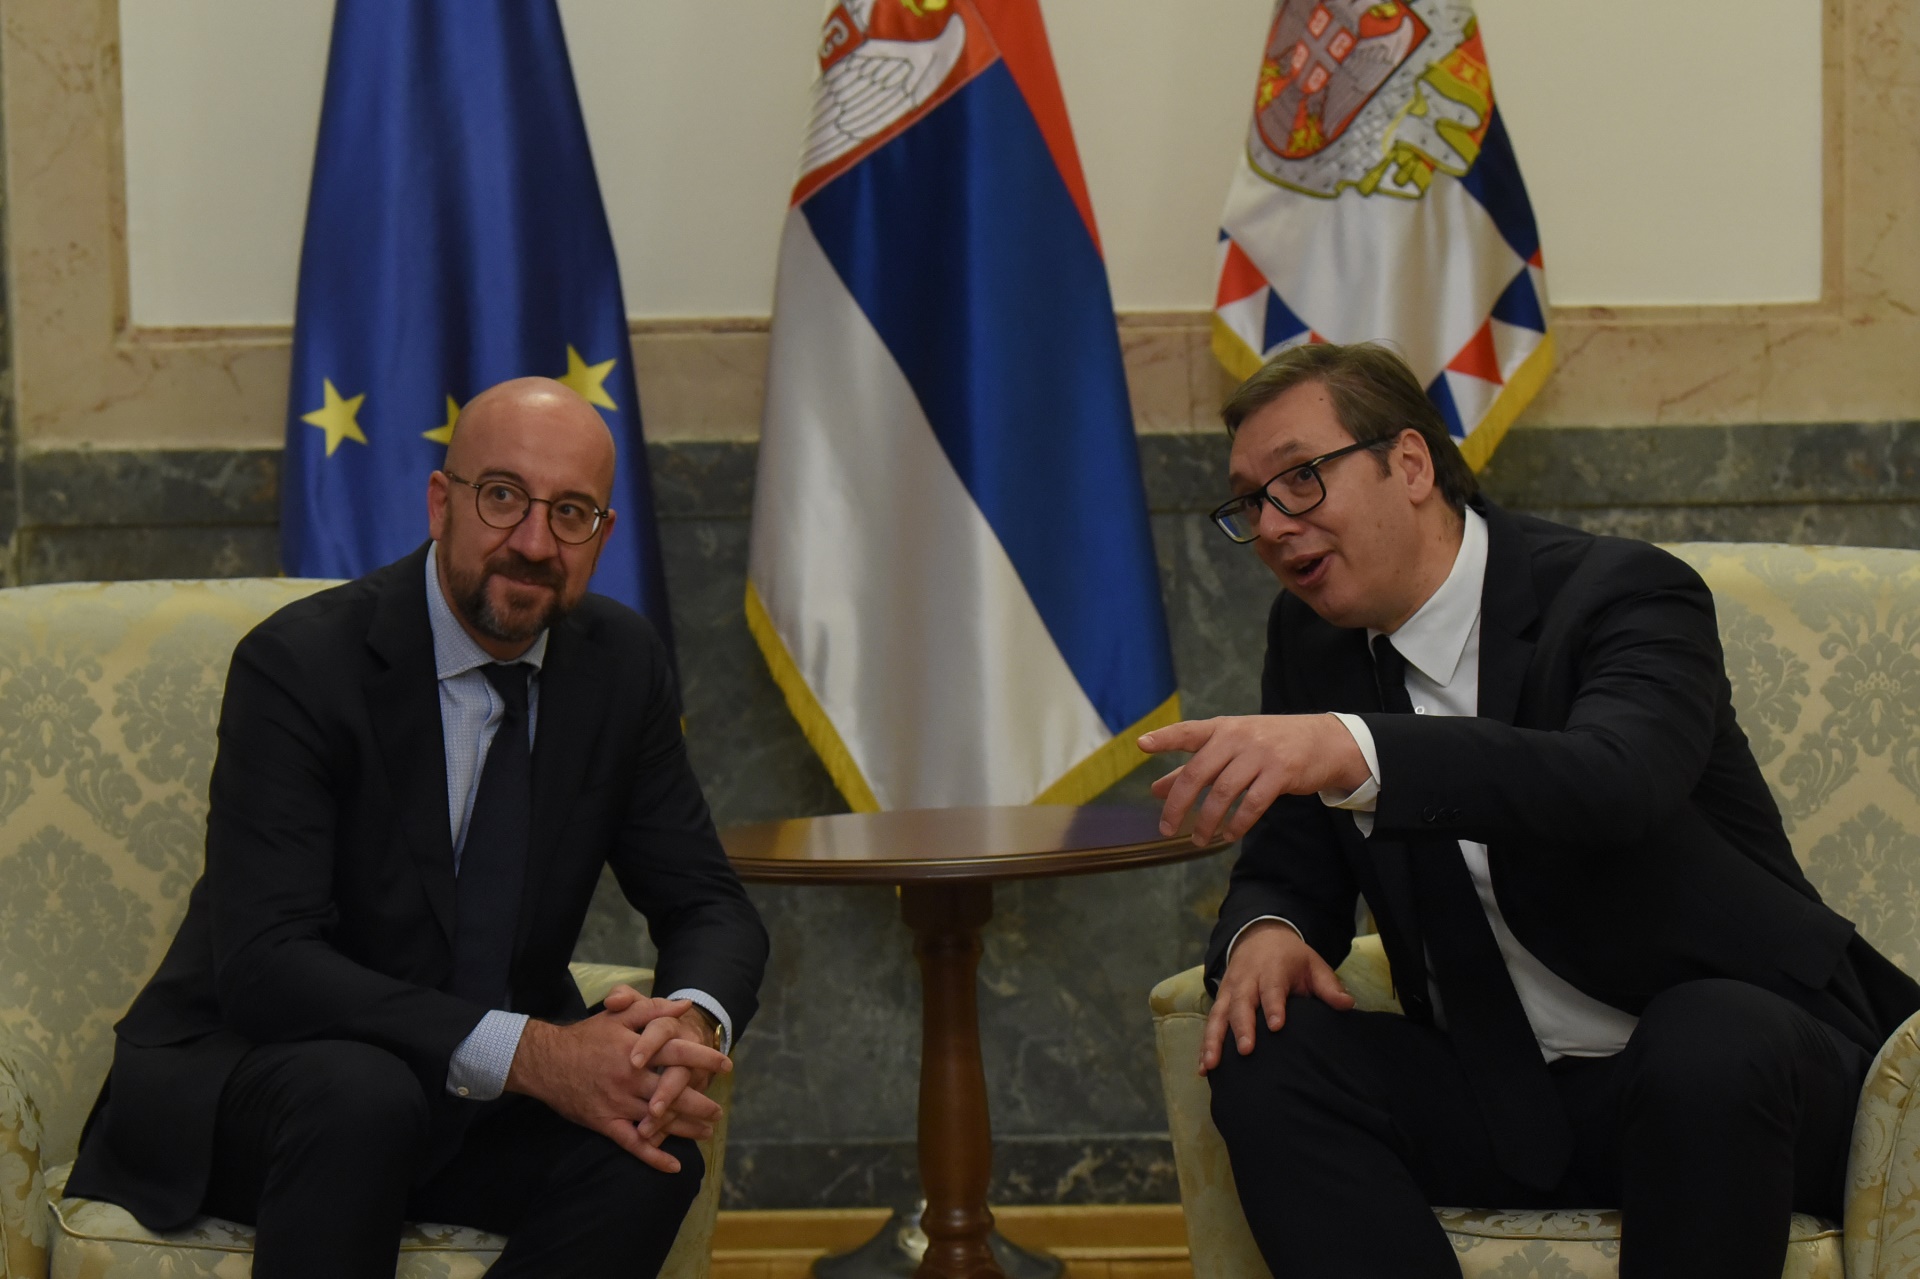 Sastanak predsednika Republike Srbije Aleksandra Vucica i predsednika Evropskog saveta Sarla Misela.